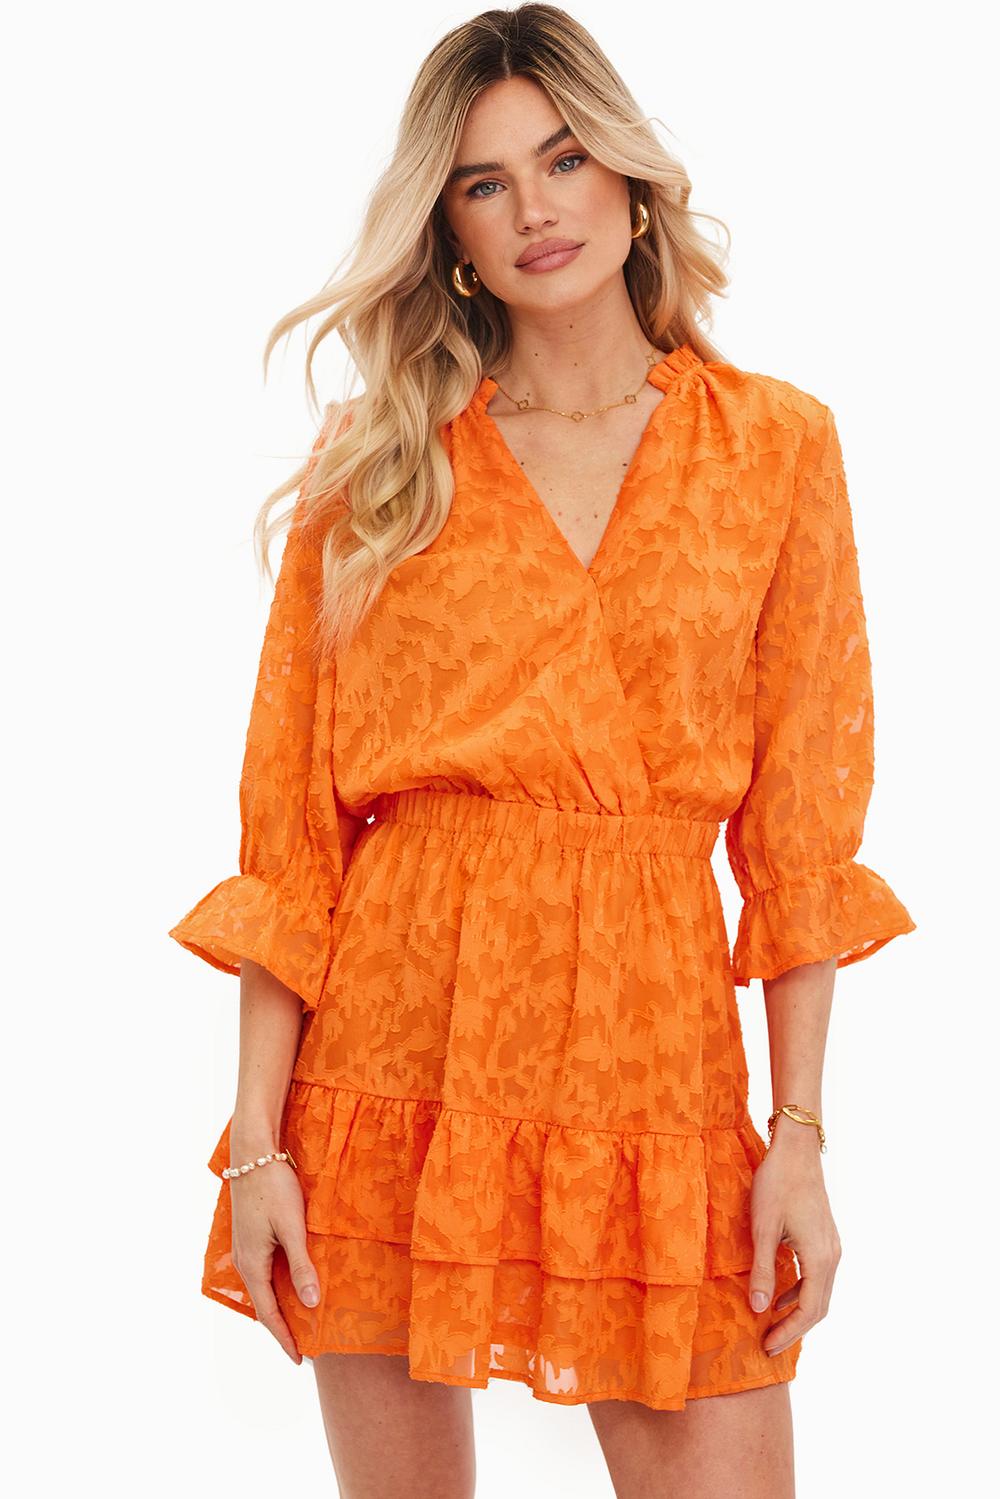 Oranje jurk